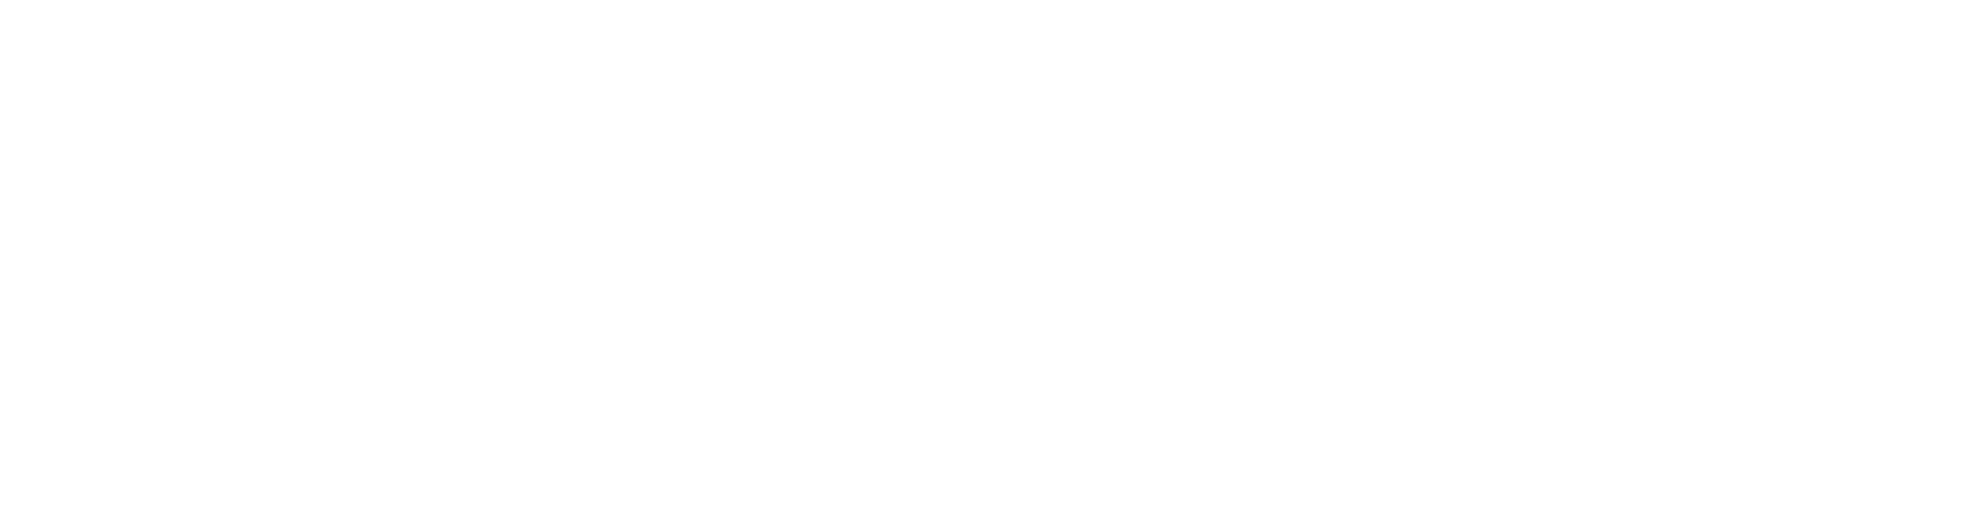 logo-residential-white